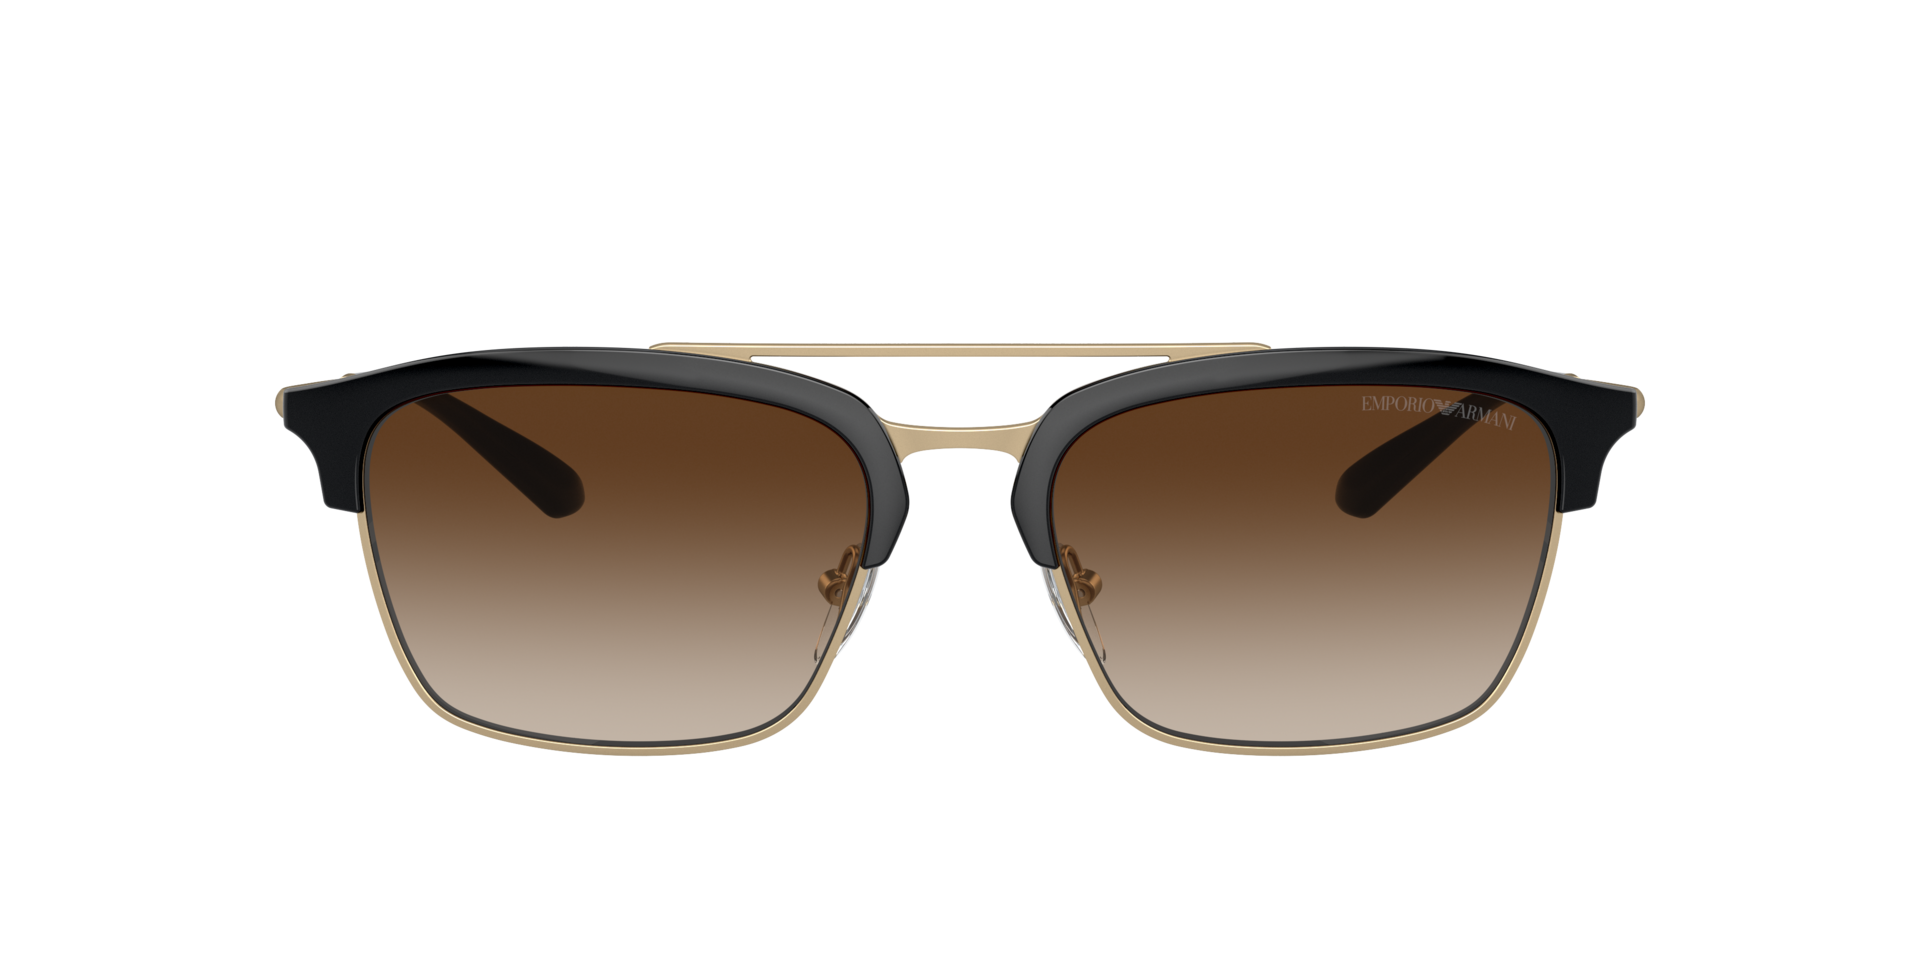 Das Bild zeigt die Sonnenbrille EA4228 300213 von der Marke Emporio Armani in schwarz/gold.